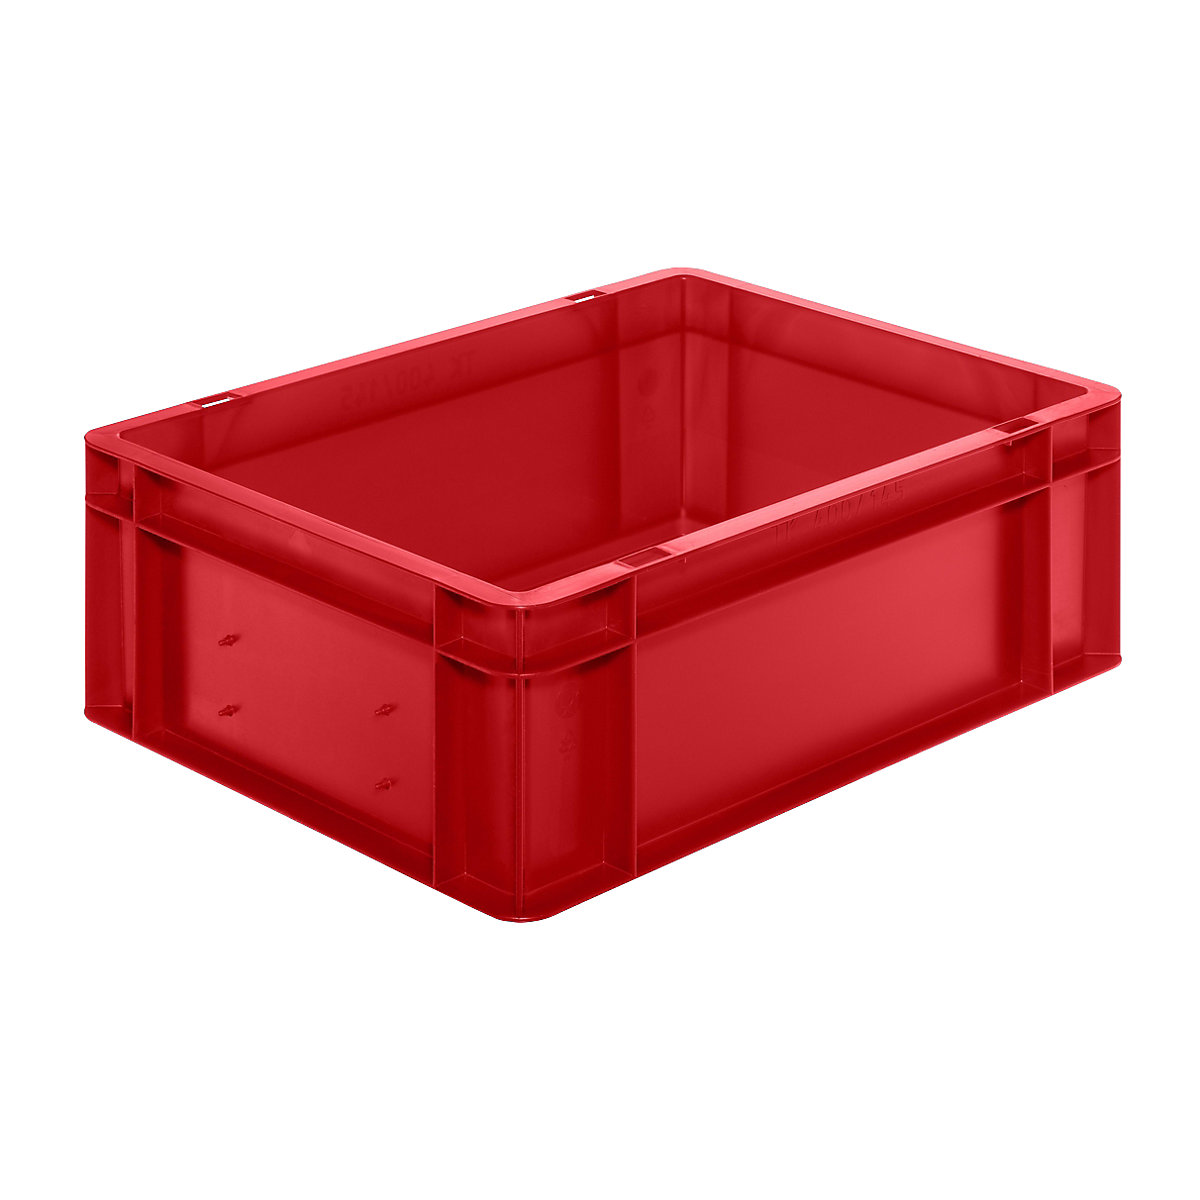 Euro-Format-Stapelbehälter, Wände und Boden geschlossen, LxBxH 400 x 300 x 145 mm, rot, VE 5 Stk